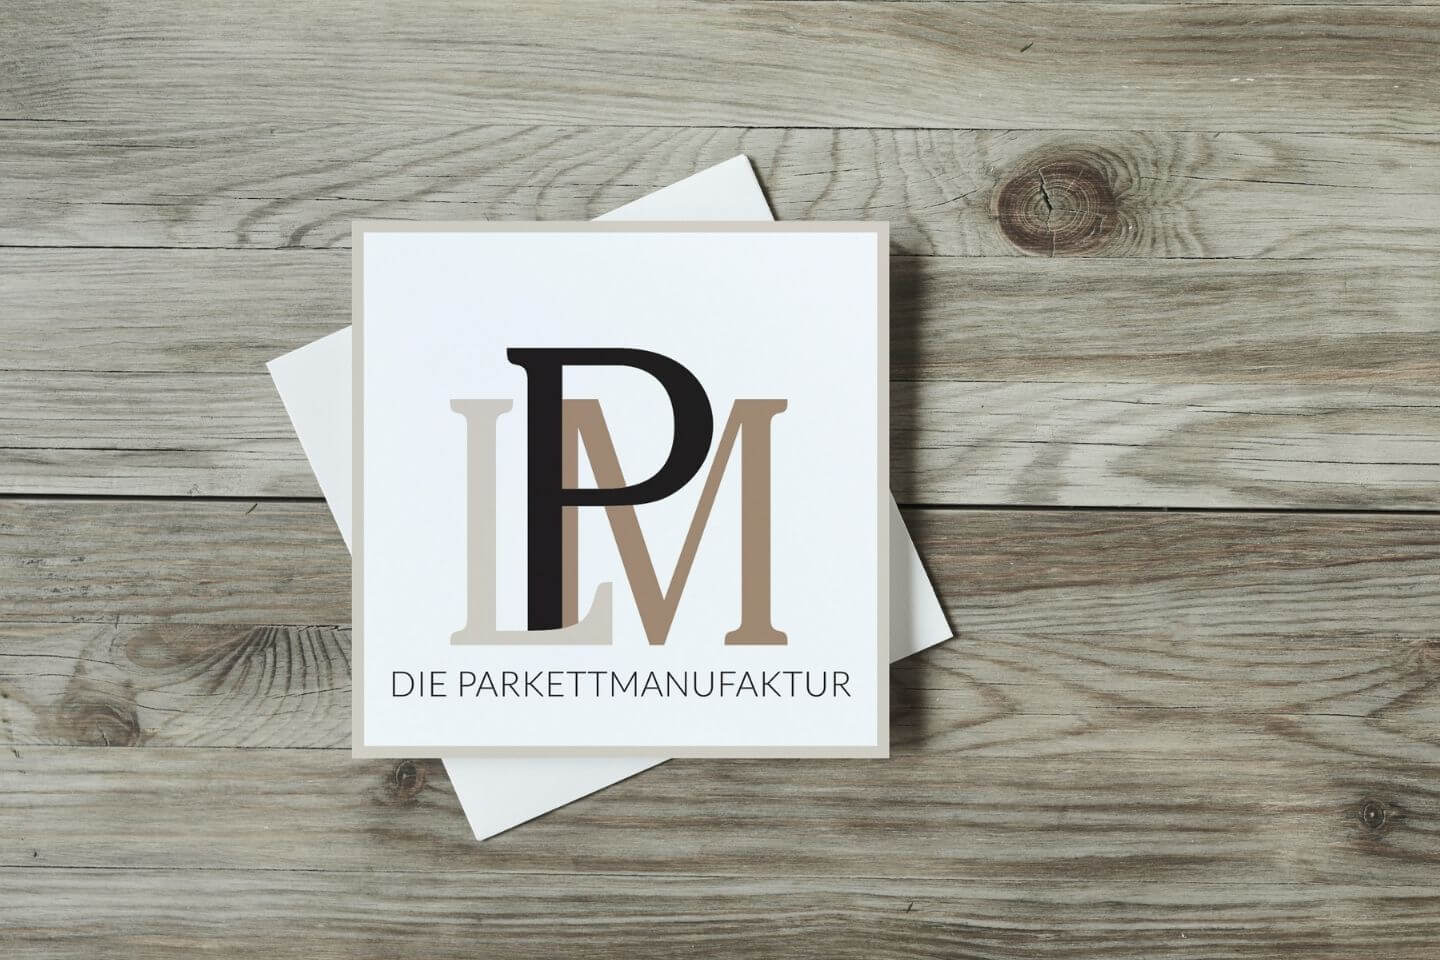 lpm-parkett_logo-holz